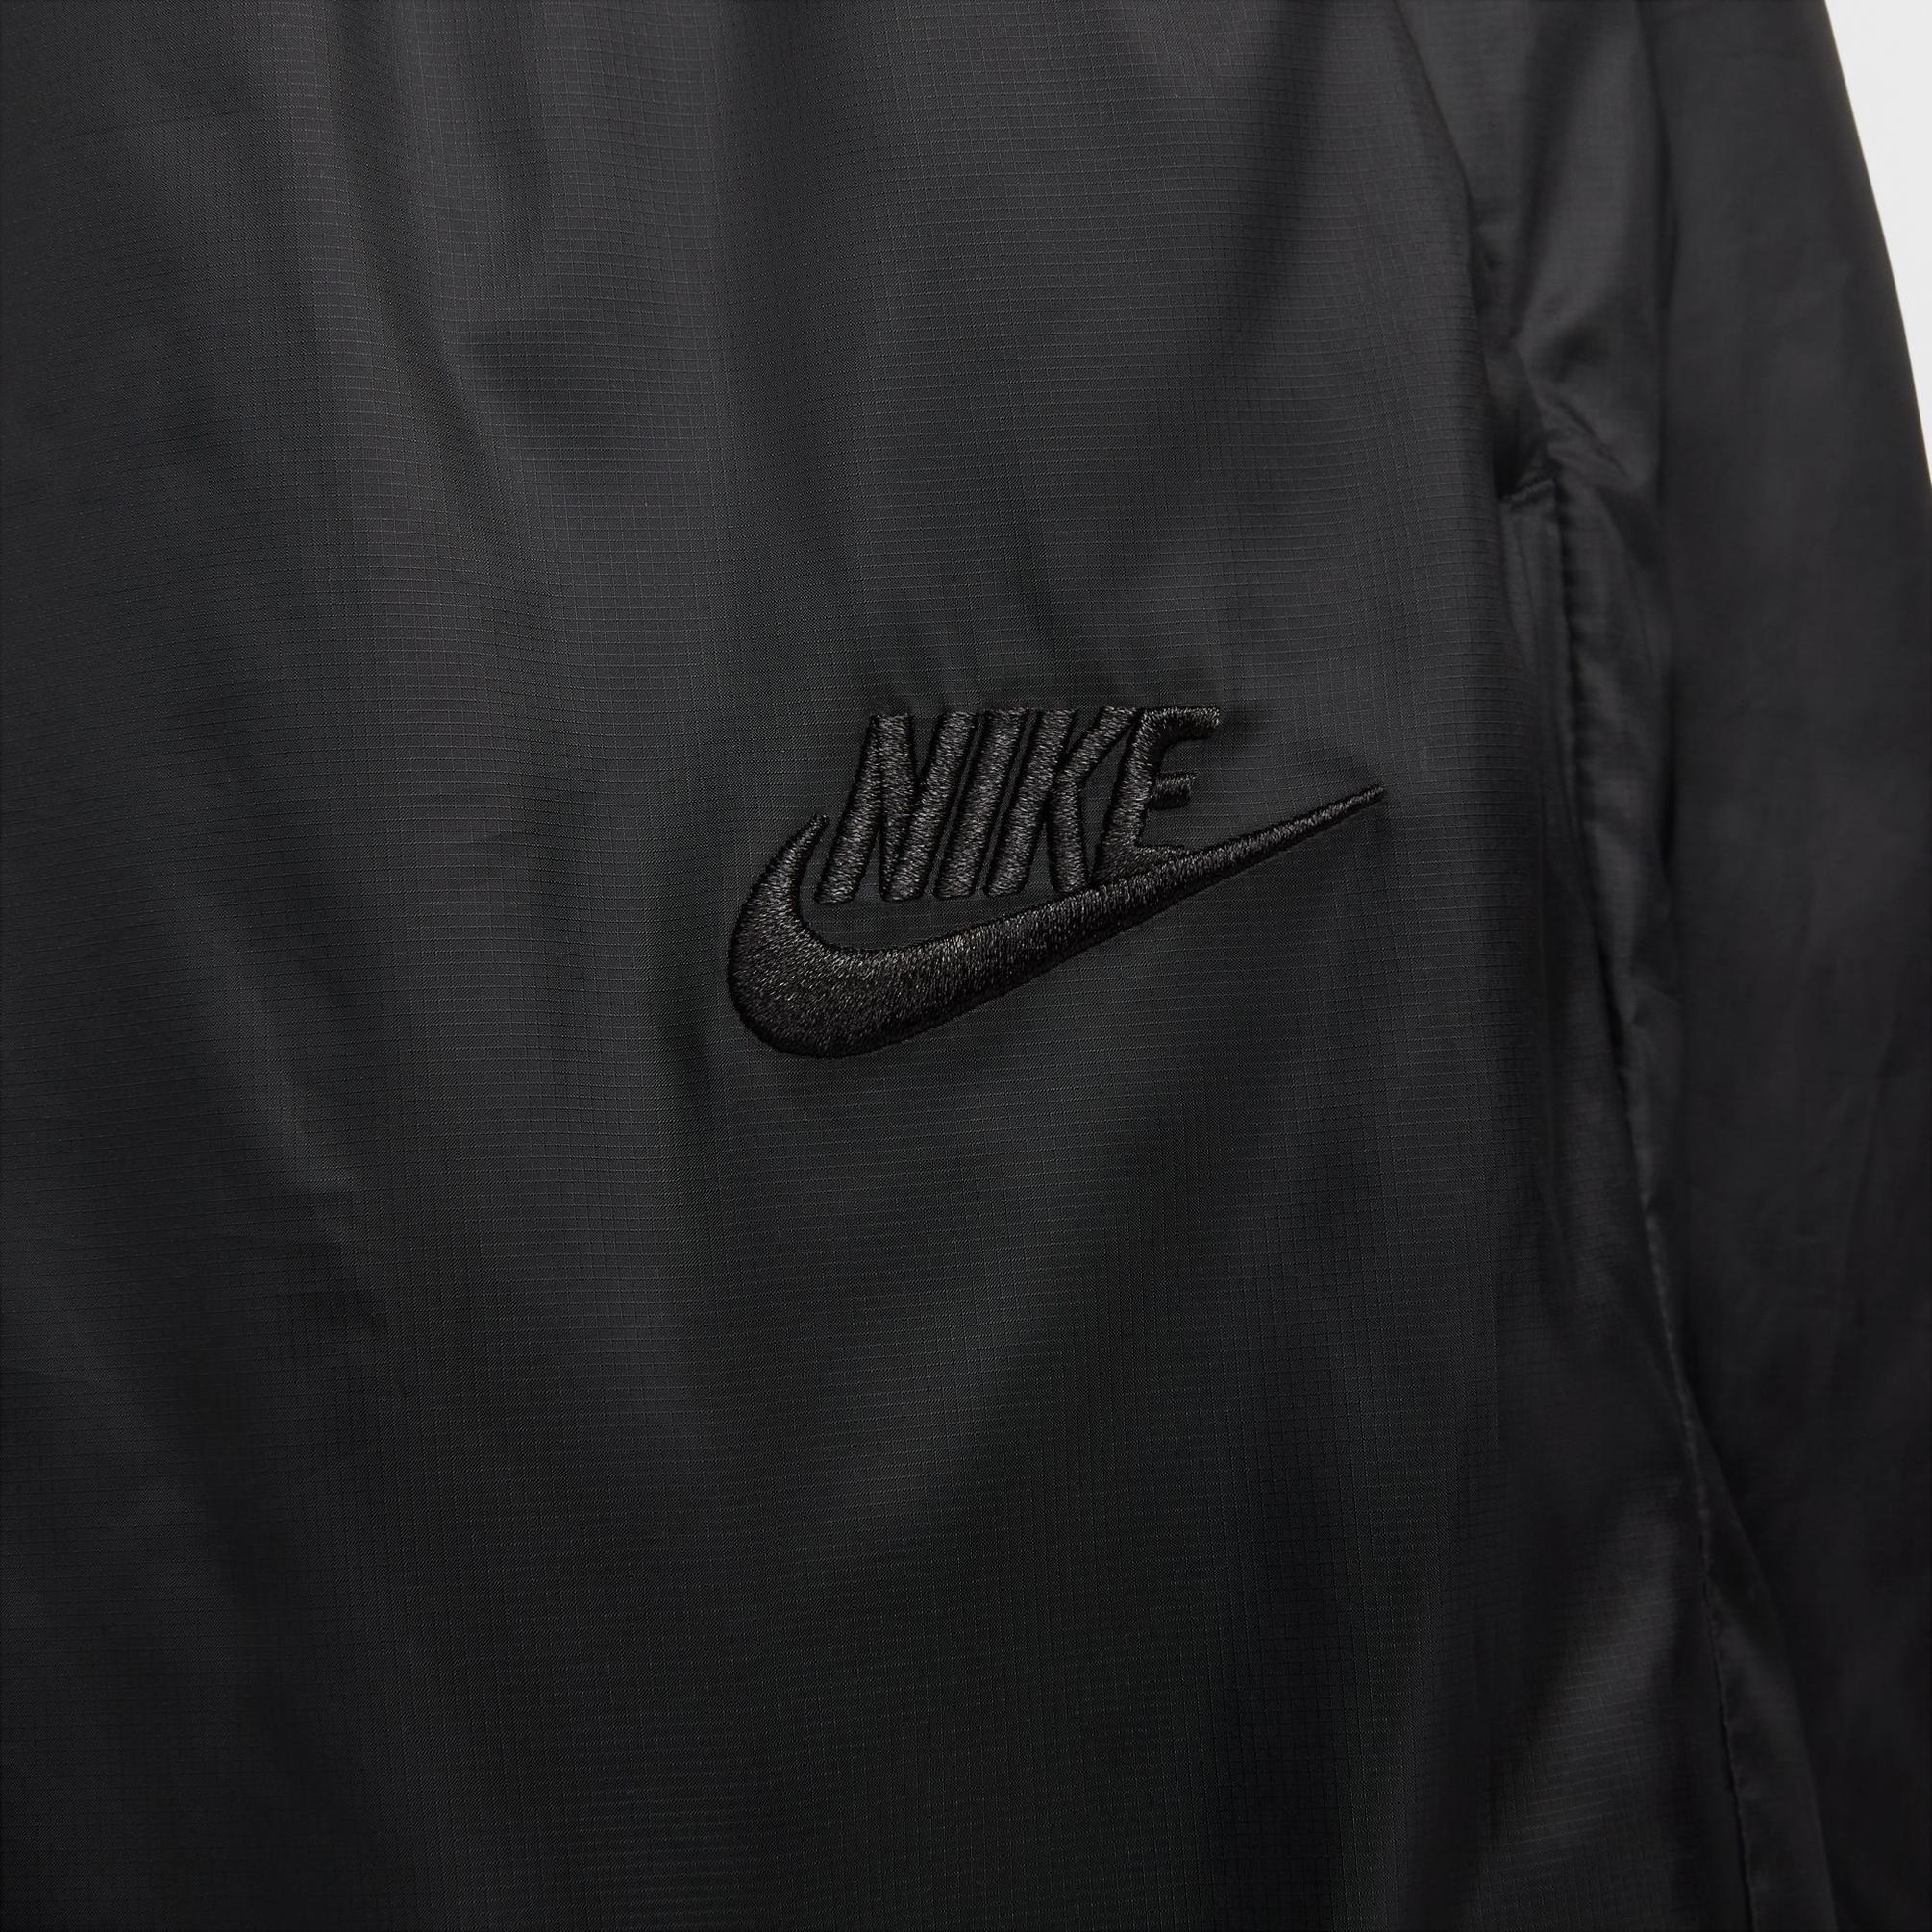  Nike Tech Woven Lnd Erkek Siyah Eşofman Altı